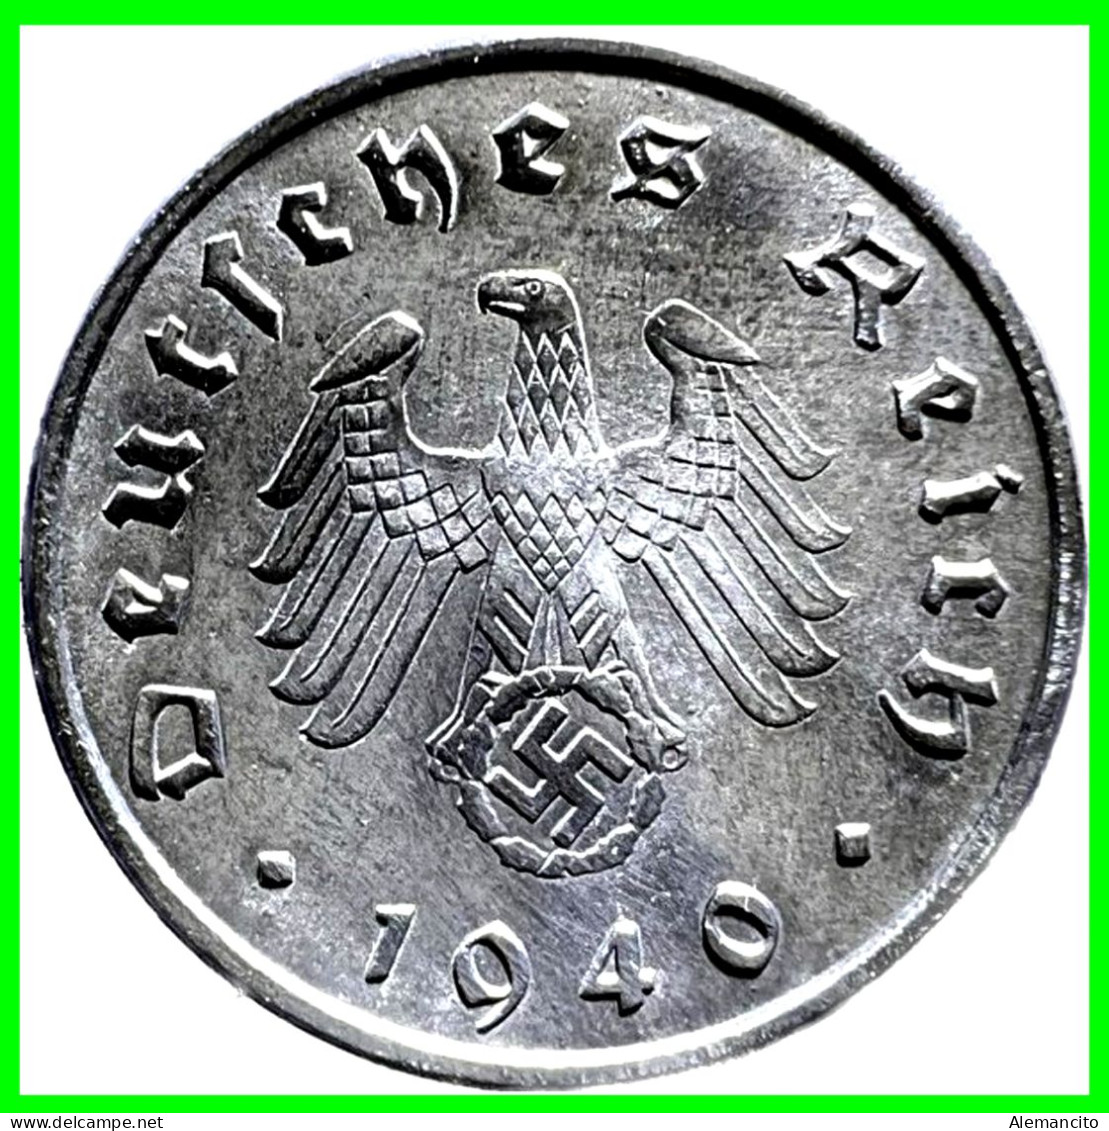 ALEMANIA - GERMANY SERIE DE 7 MONEDAS DE 10 REICHSPFNNIG TERCER REICHS ( AÑO 1940 CECAS - A - B -D - E - F - G - J ) - 10 Reichspfennig